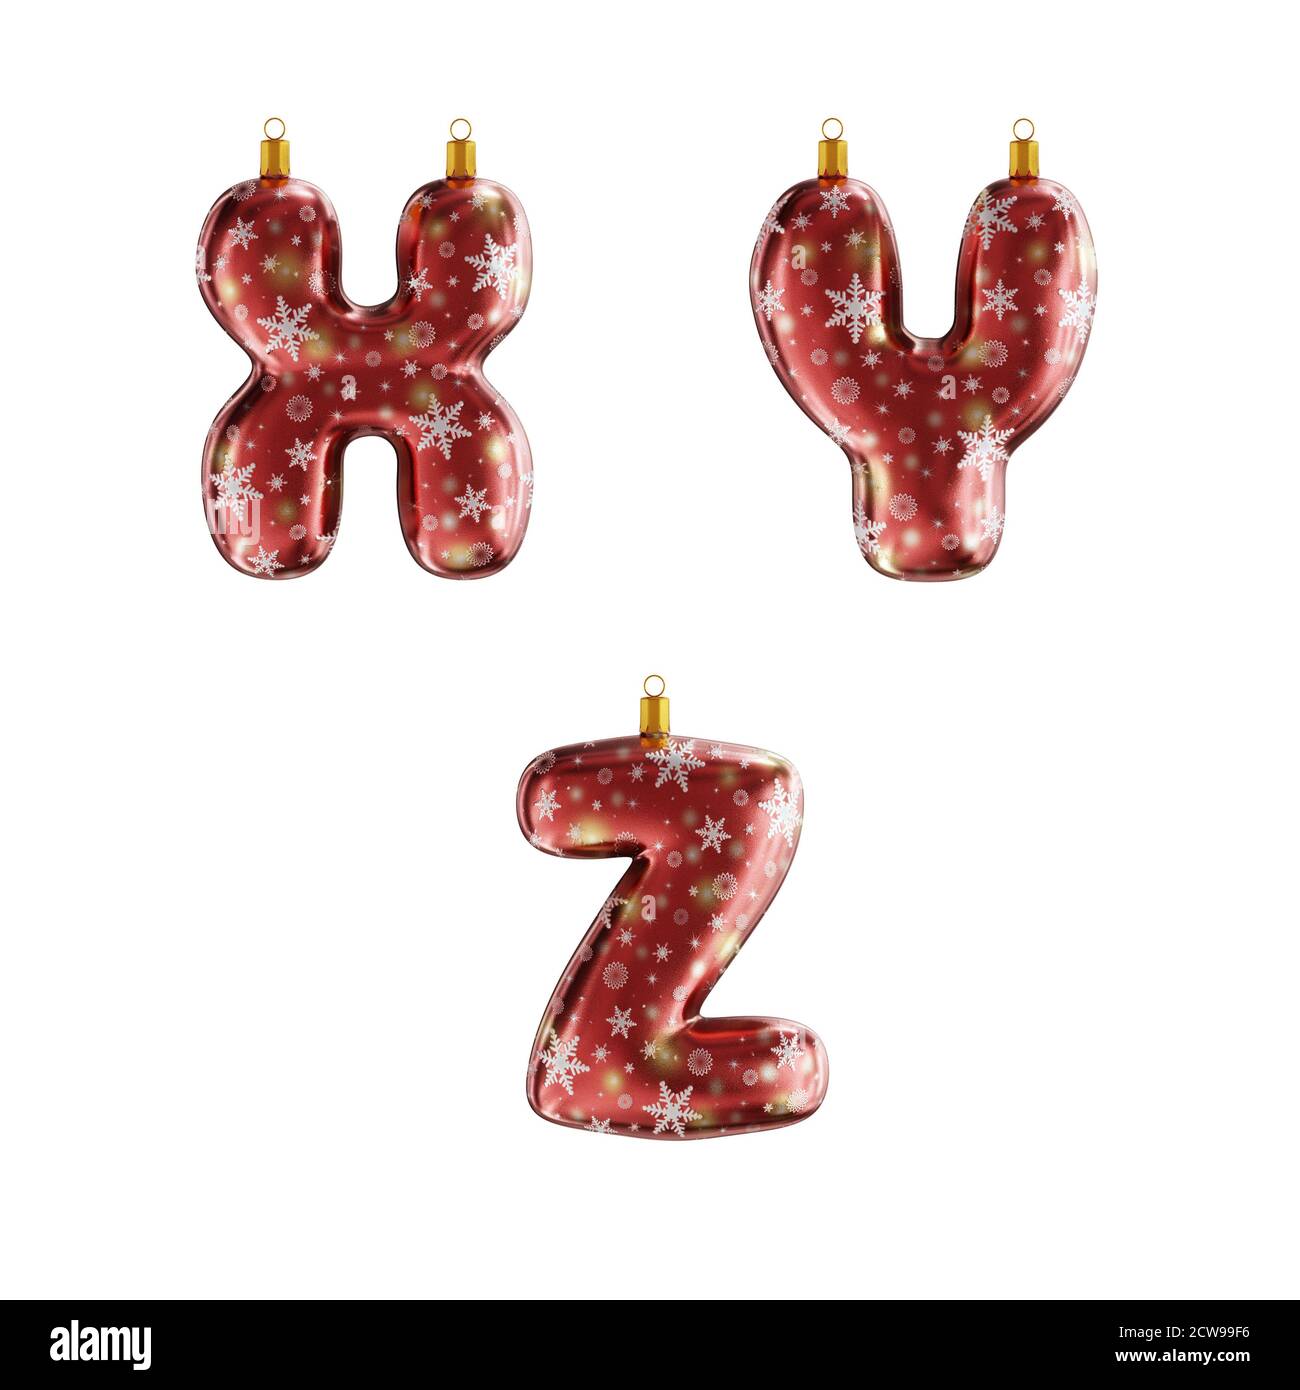 3D-Rendering von roten weihnachtsschmuck Alphabet auf weiß geschossen - Buchstaben X-Z Stockfoto